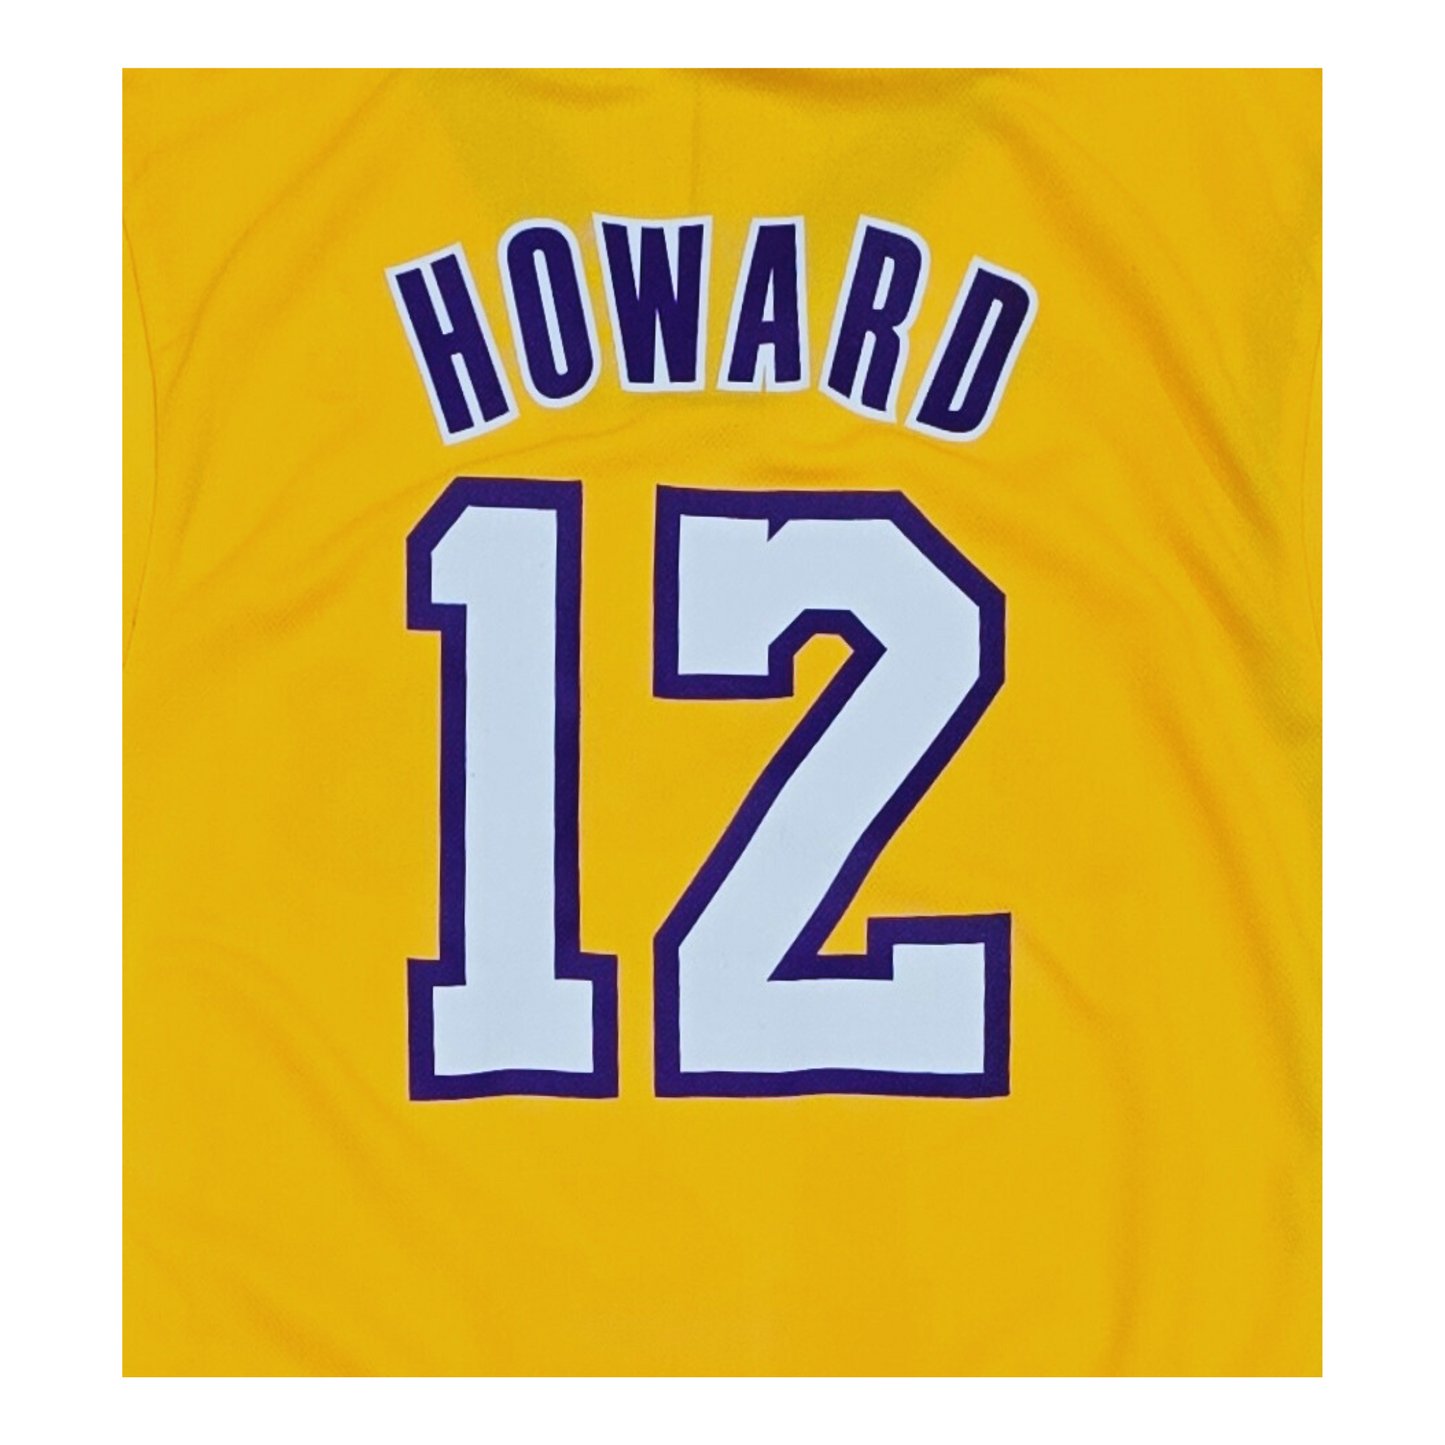 Los Angeles Lakers 2012/13 Swingman Jersey - Dwight Howard